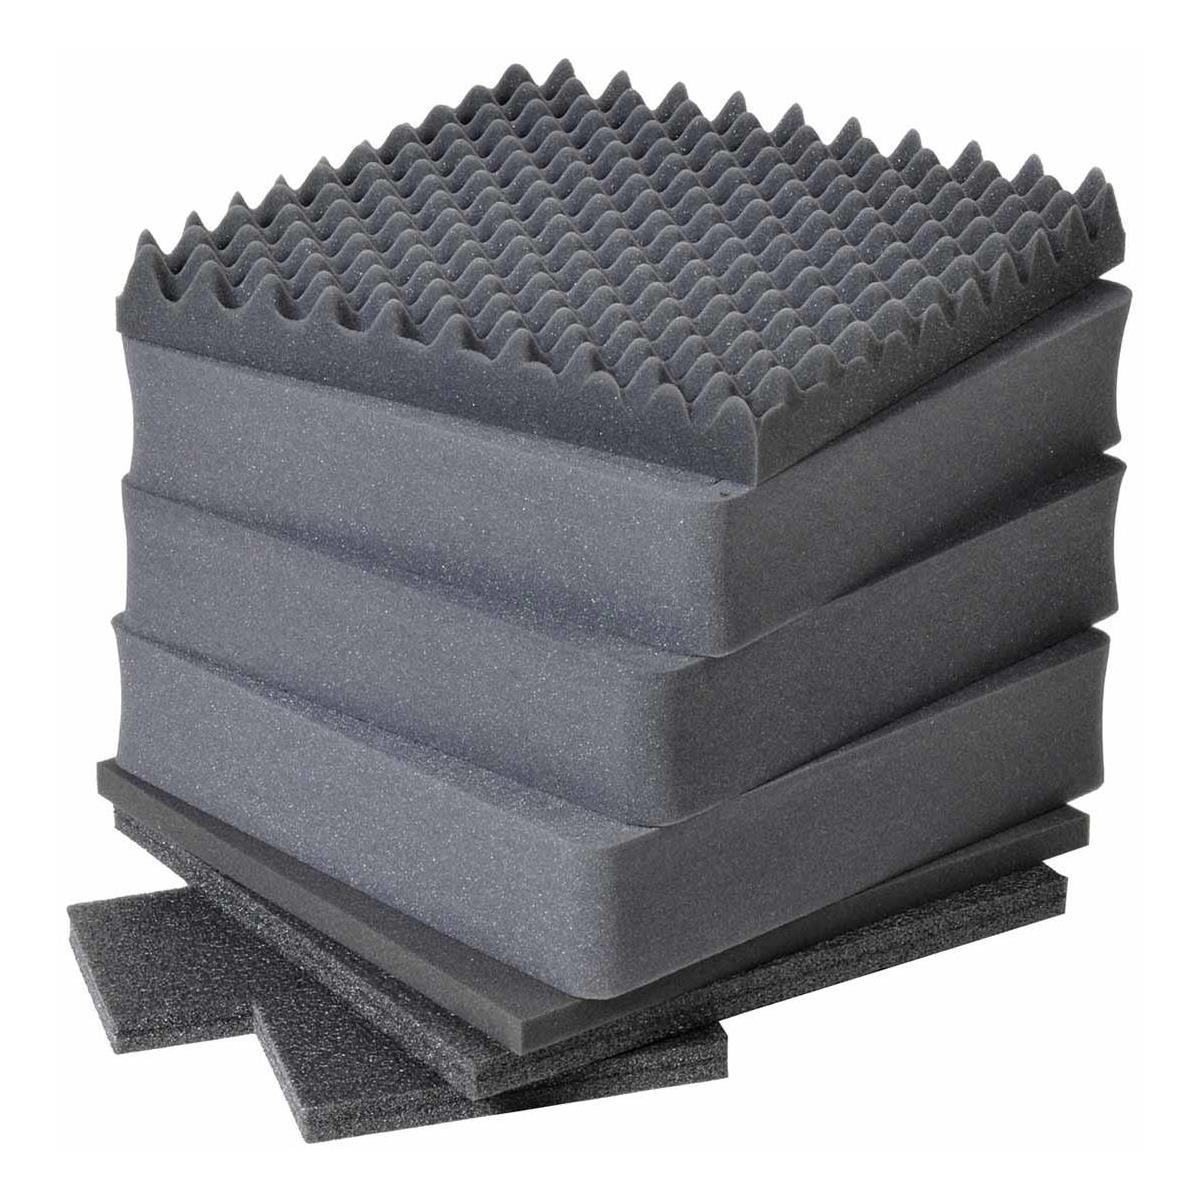 Pelican Die Cut Foam Set for 0350 Cube Case, 3 Pieces -  0350-403-000